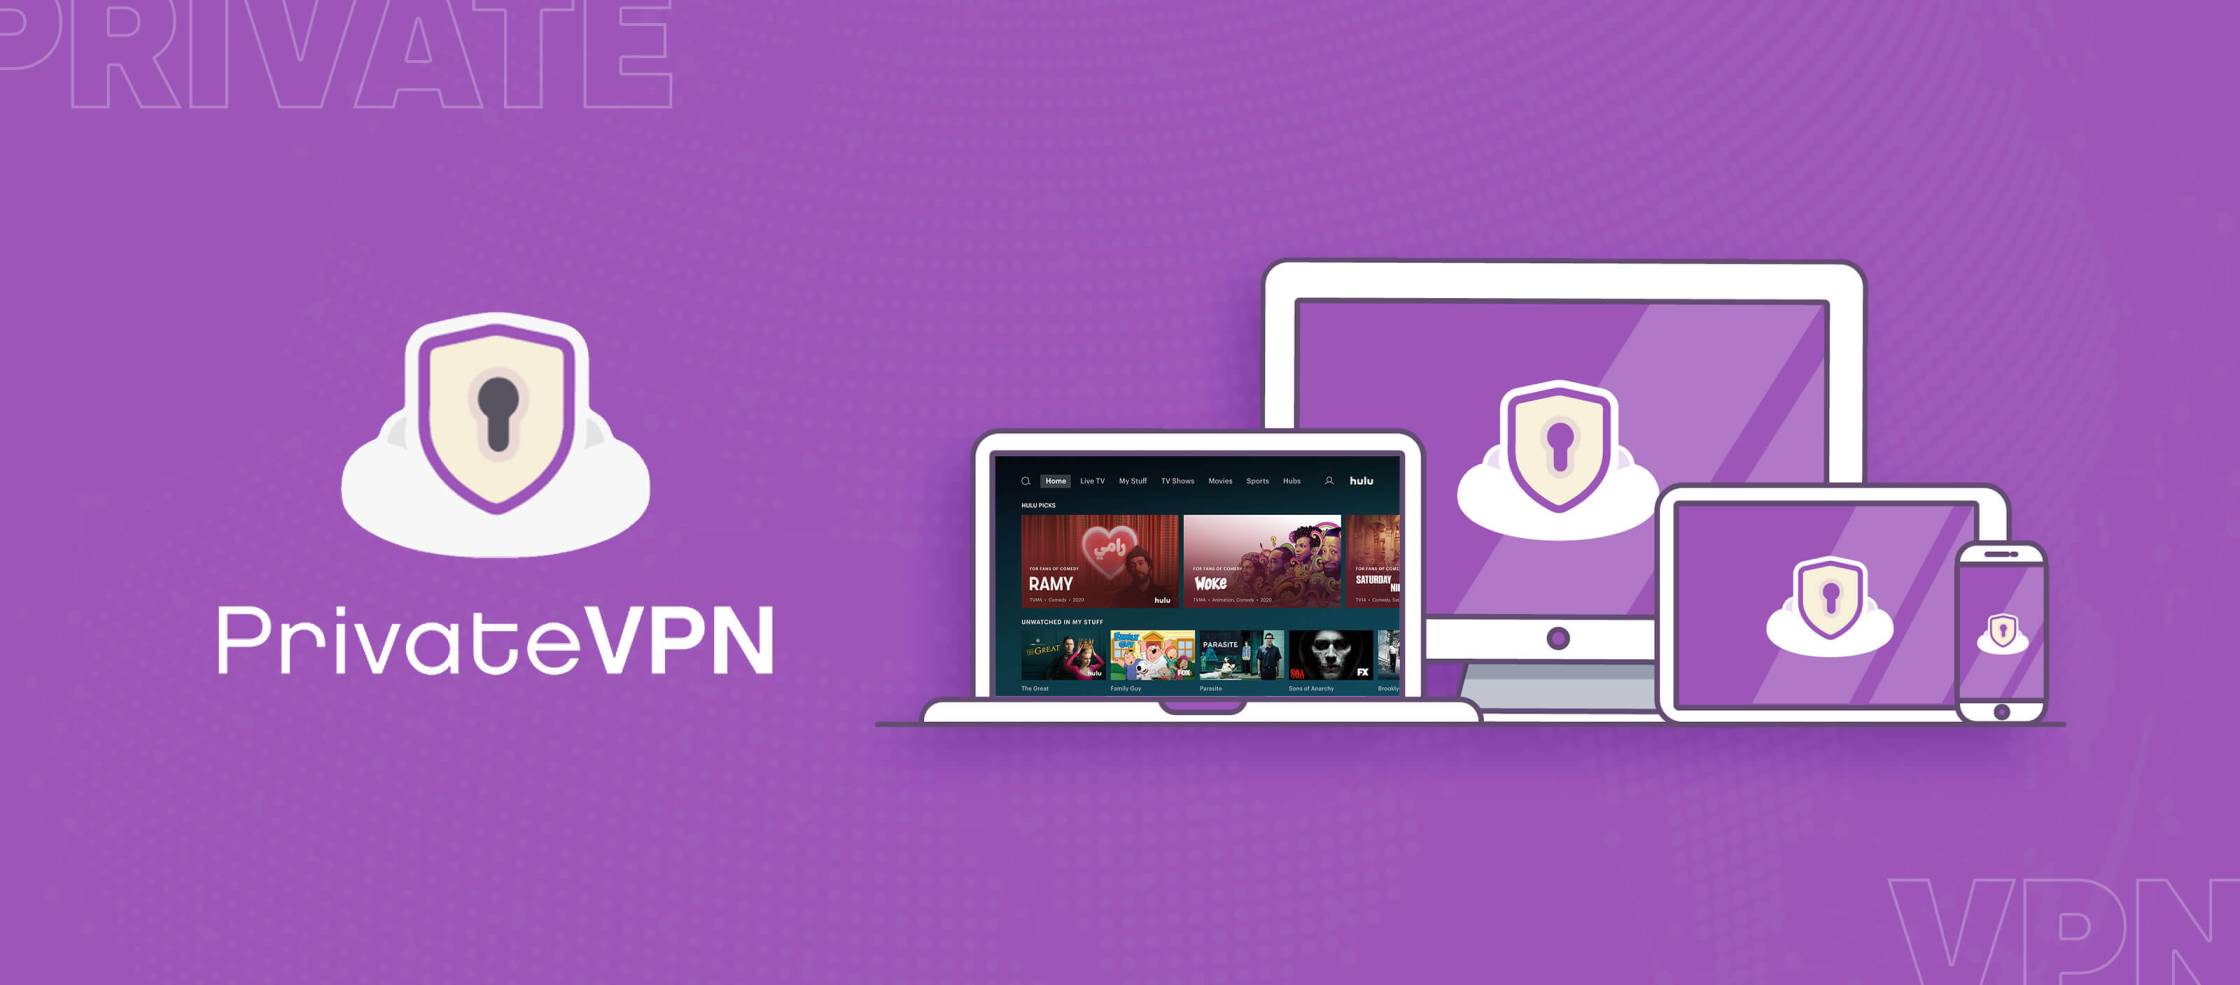  PrivateVPN-Hulu è un servizio di rete privata virtuale che consente agli utenti di accedere al sito di streaming Hulu da qualsiasi parte del mondo. Con PrivateVPN-Hulu, gli utenti possono bypassare le restrizioni geografiche e accedere a contenuti esclusivi disponibili solo su Hulu. Inoltre, PrivateVPN-Hulu offre una connessione sicura e crittografata per proteggere la privacy degli utenti durante 